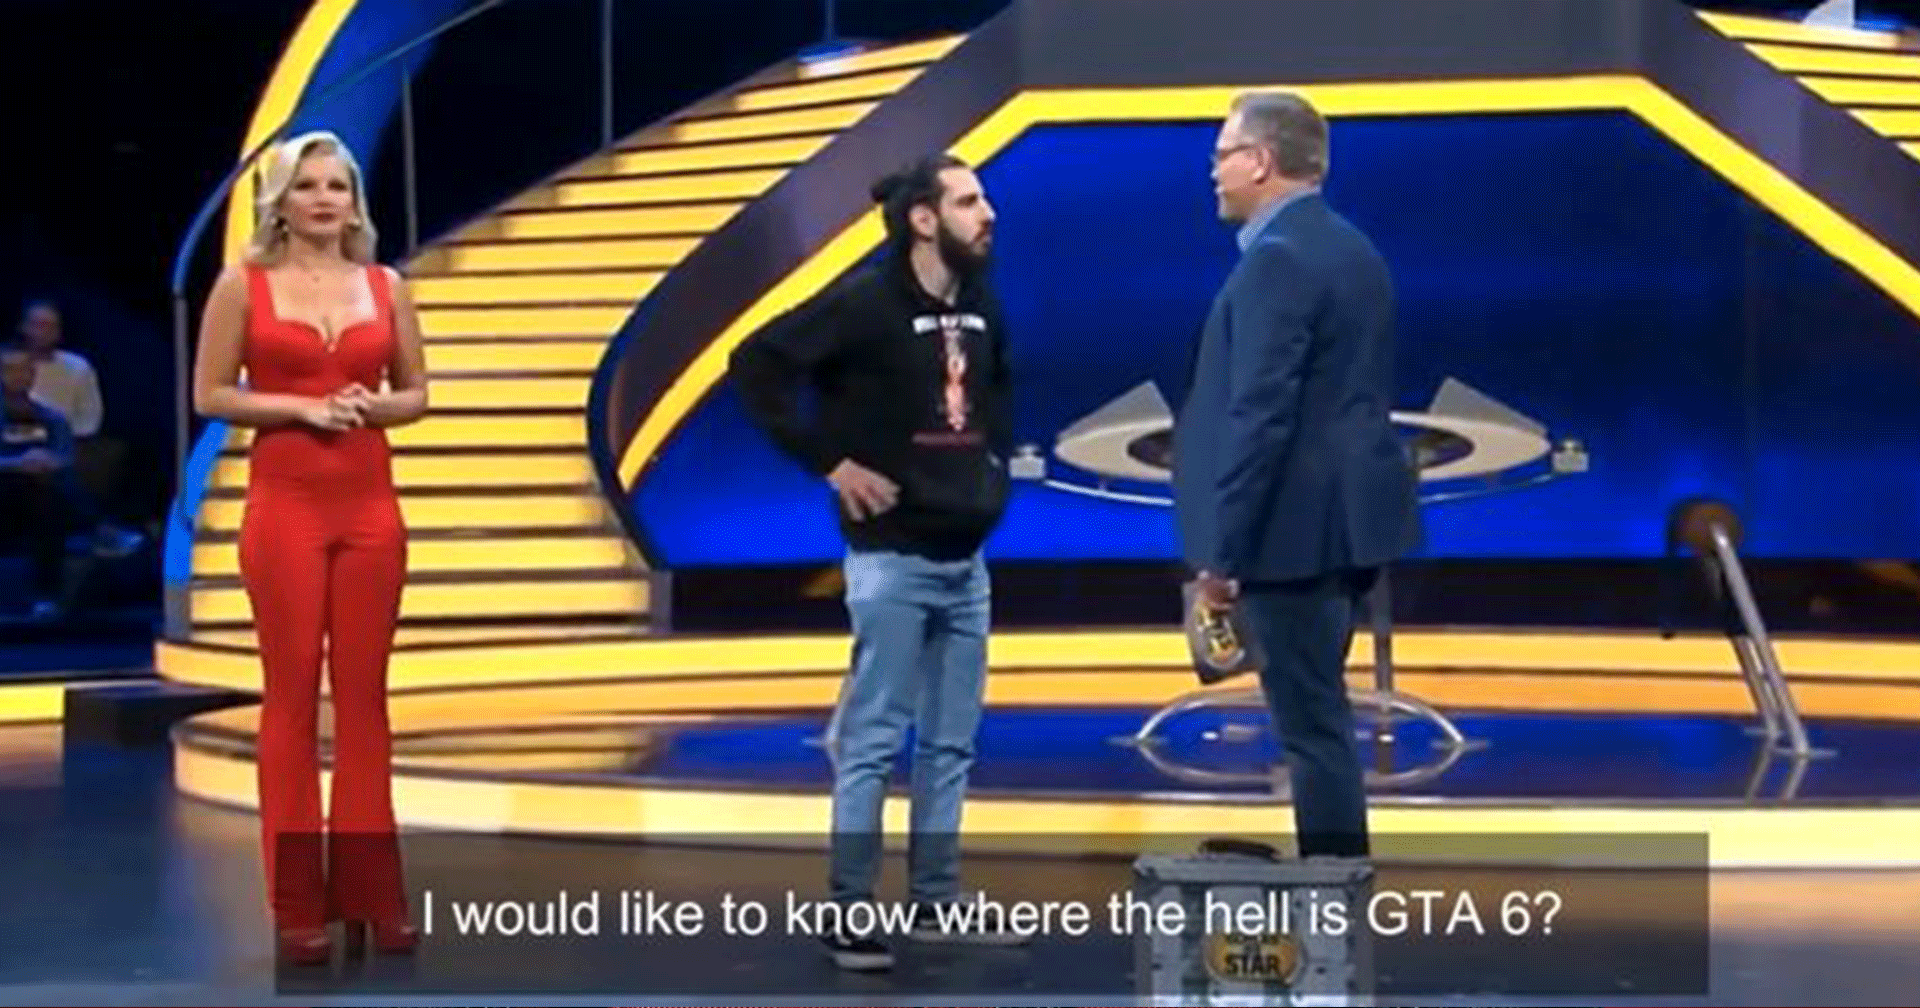 เกมเมอร์บุกรายการเกมโชว์ถามหา GTA 6